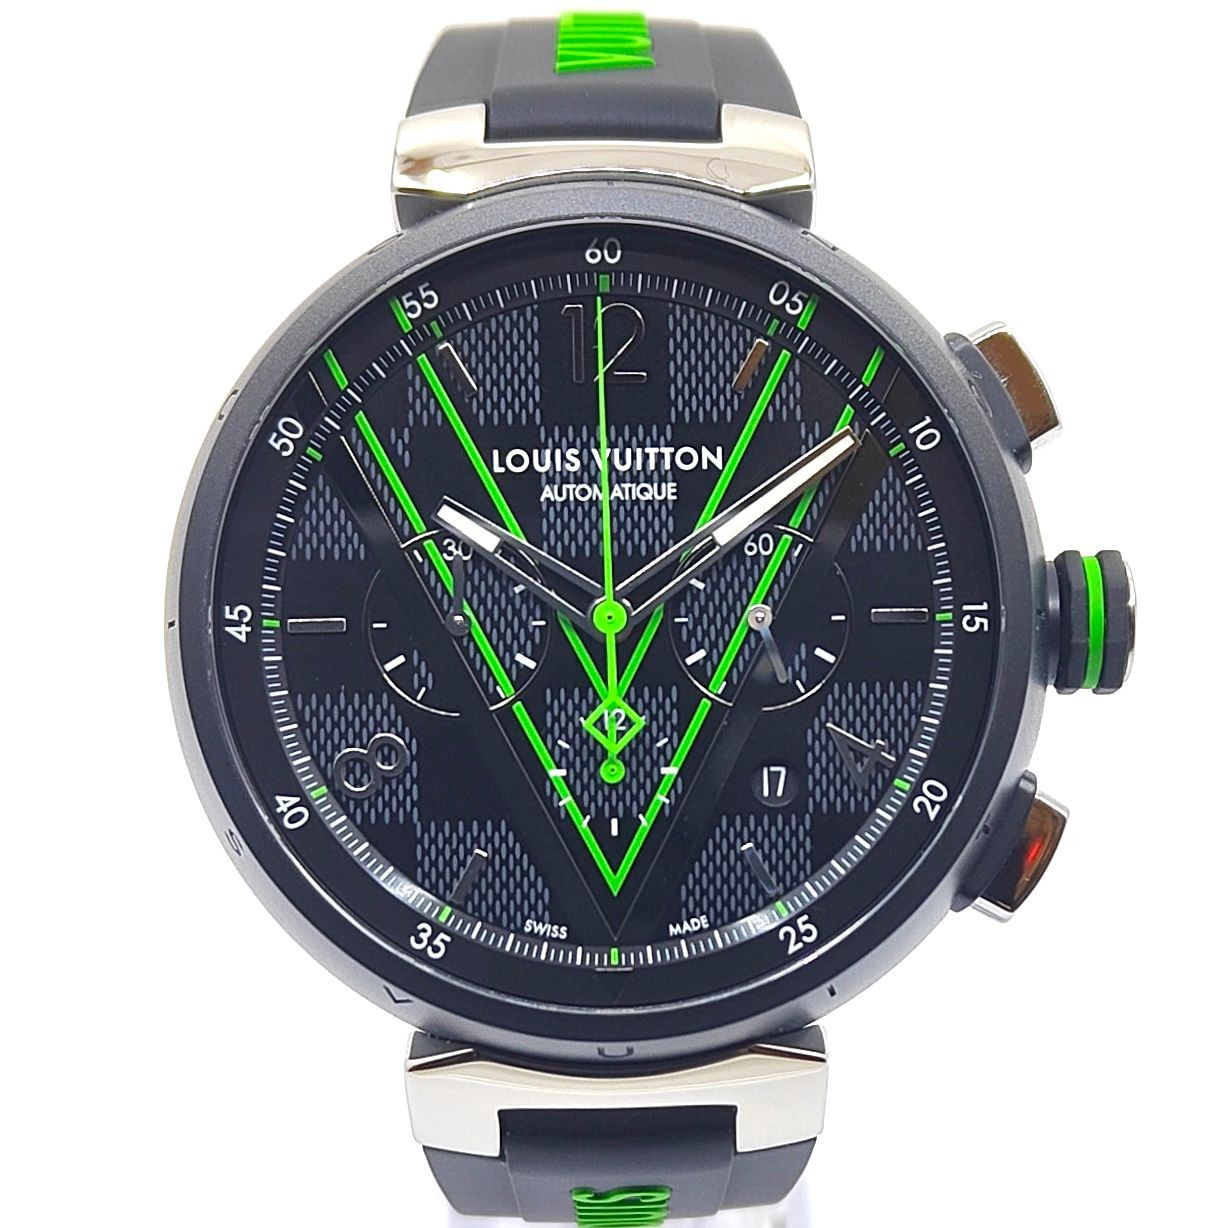 The Louis Vuitton Tambour Damier Graphite Race Chronograph might